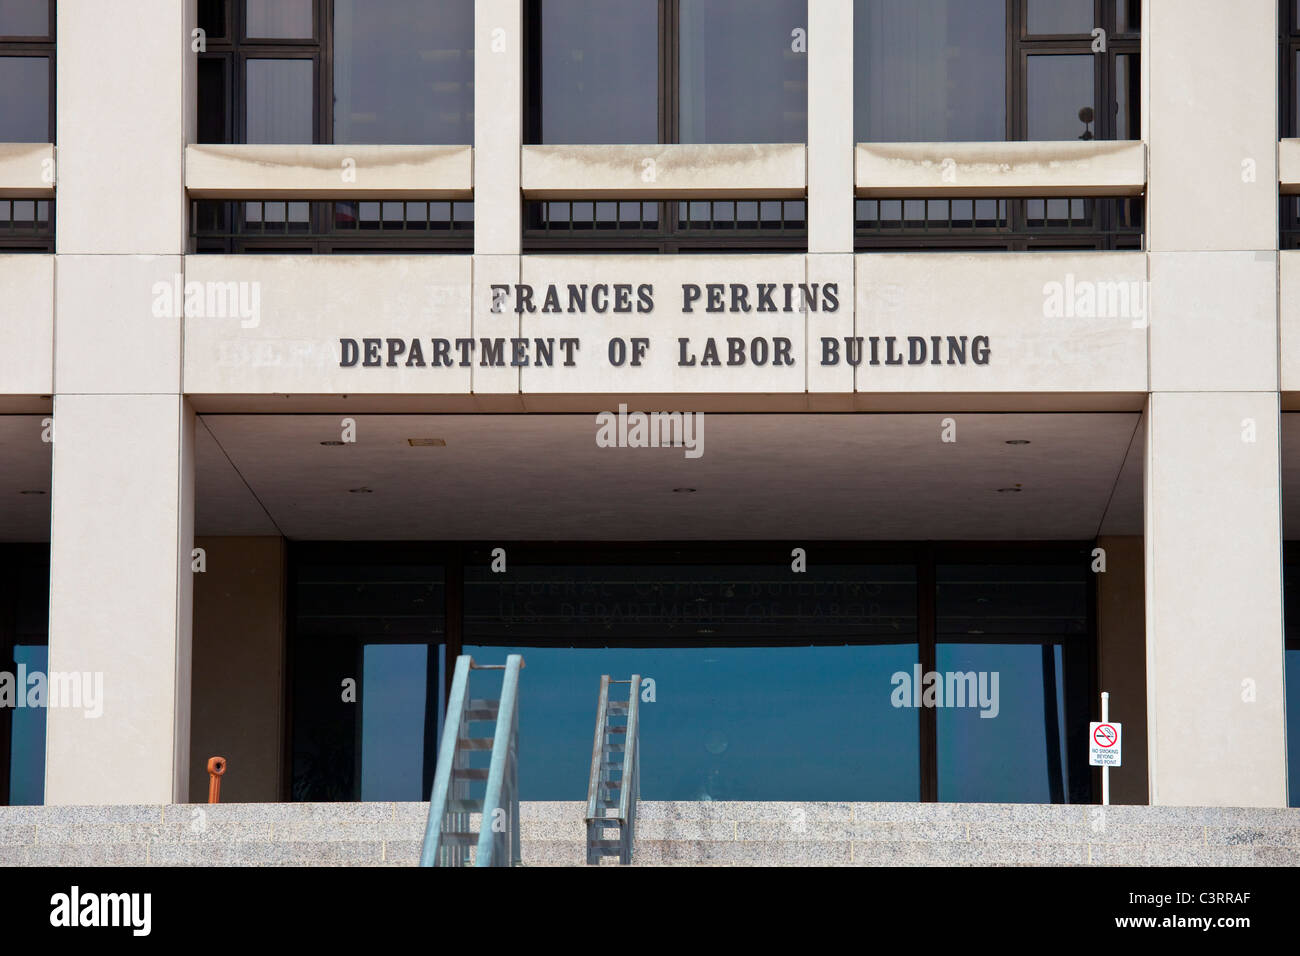 Frances Perkins Deparment of Labor Building, Washington DC Stock Photo